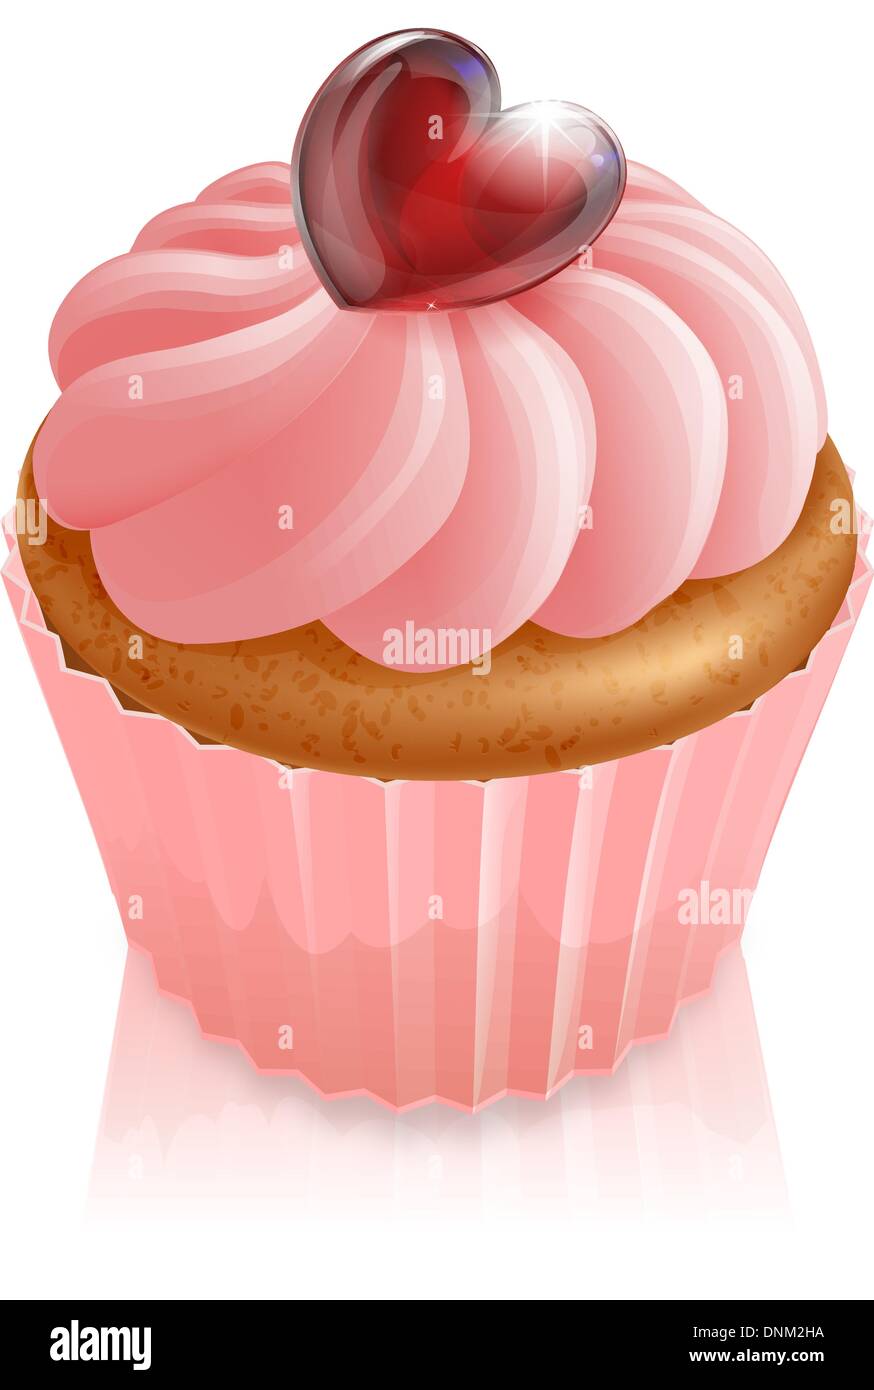 Pink Fairy cake cupcake en forme de coeur avec l'illustration et décoration glaçage rose Illustration de Vecteur